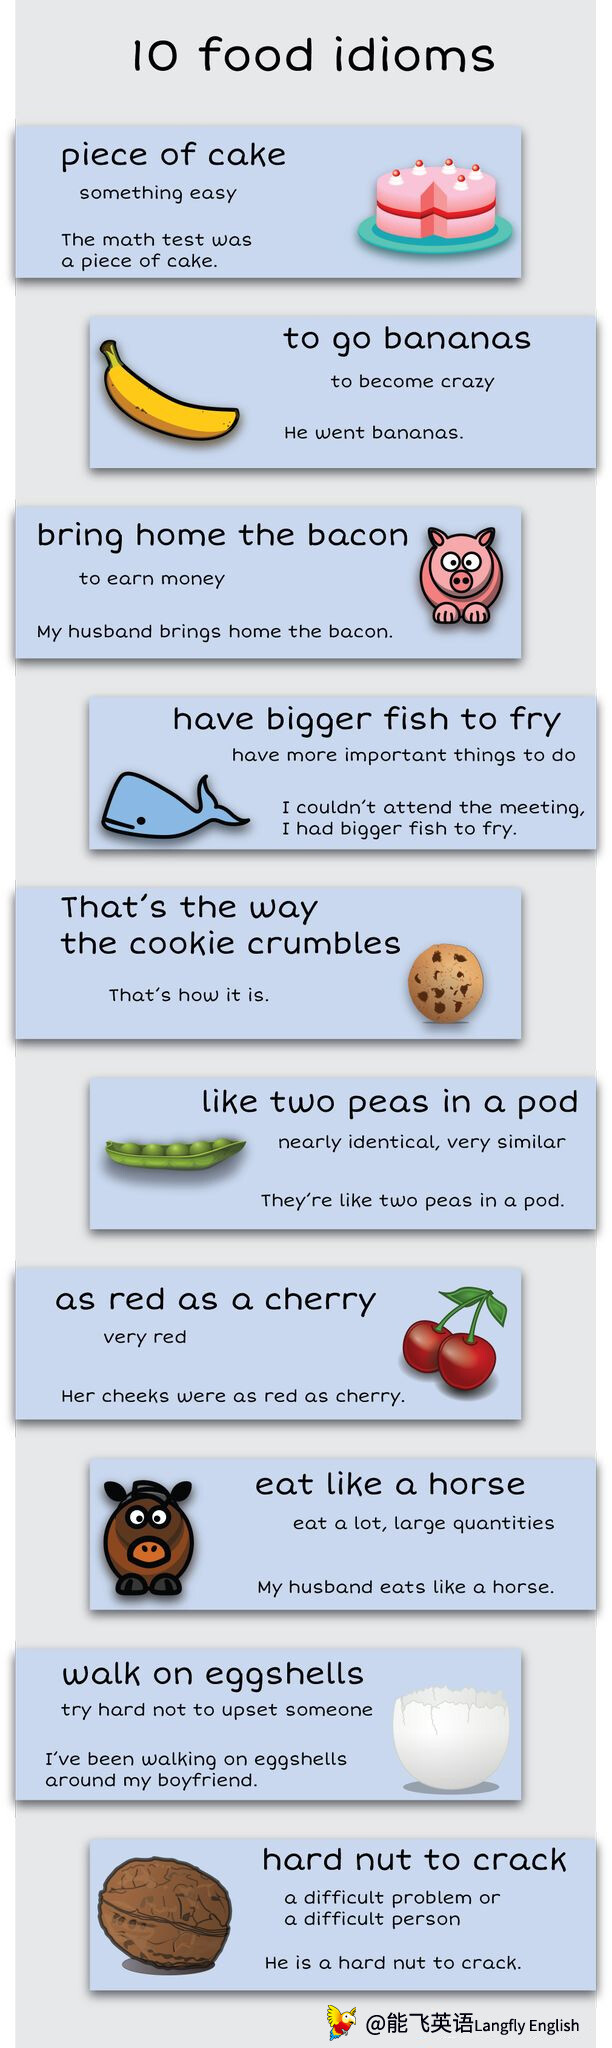 10种与食物有关的英语习语